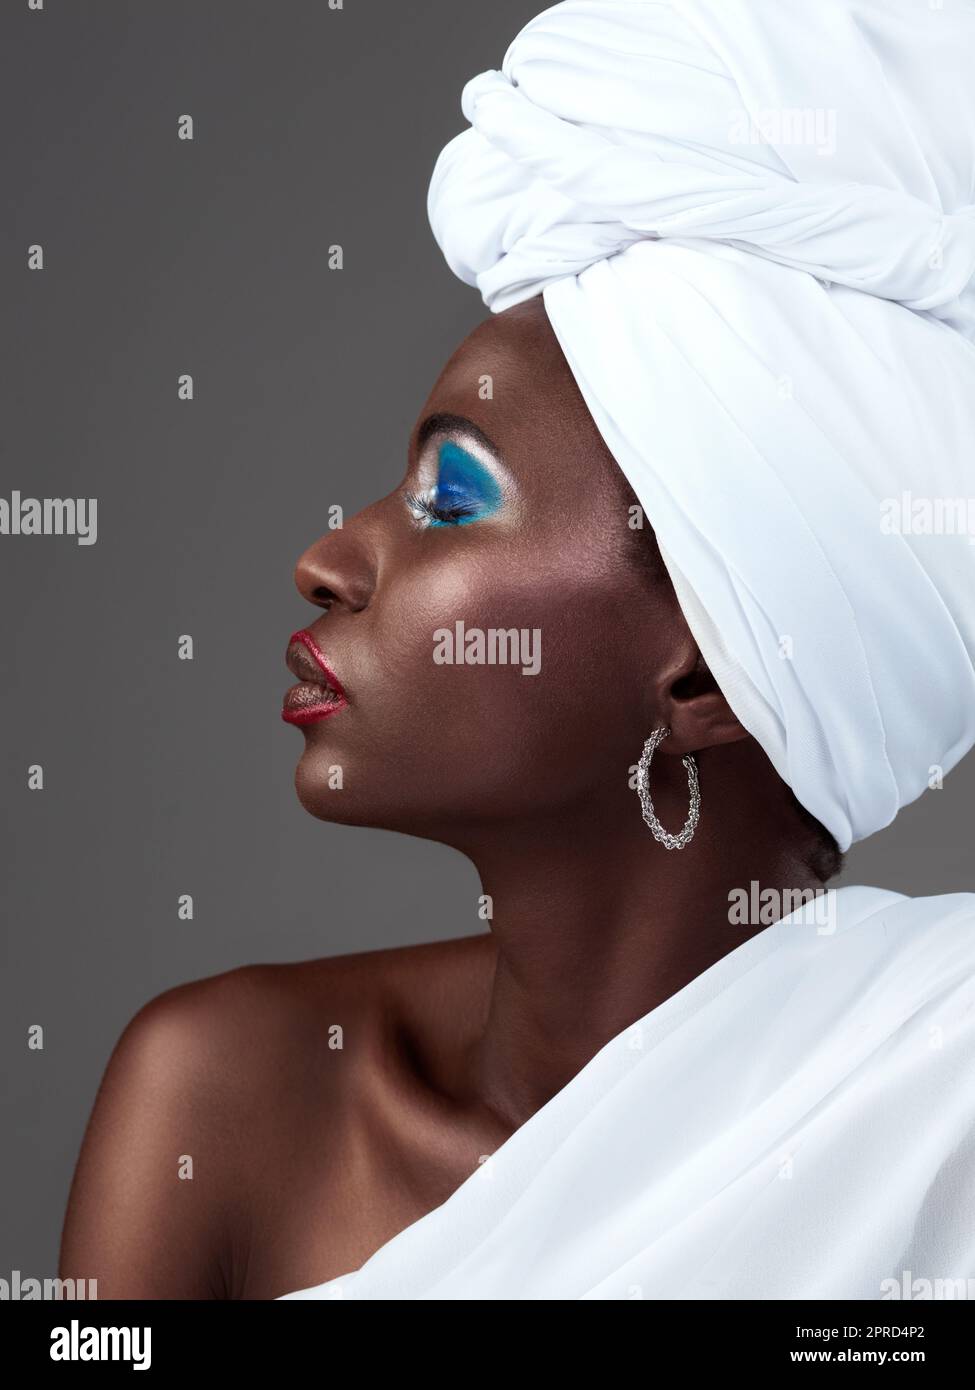 Tradition ist immer im Trend. Studioaufnahme einer attraktiven jungen Frau, die in traditioneller afrikanischer Kleidung vor grauem Hintergrund posiert. Stockfoto